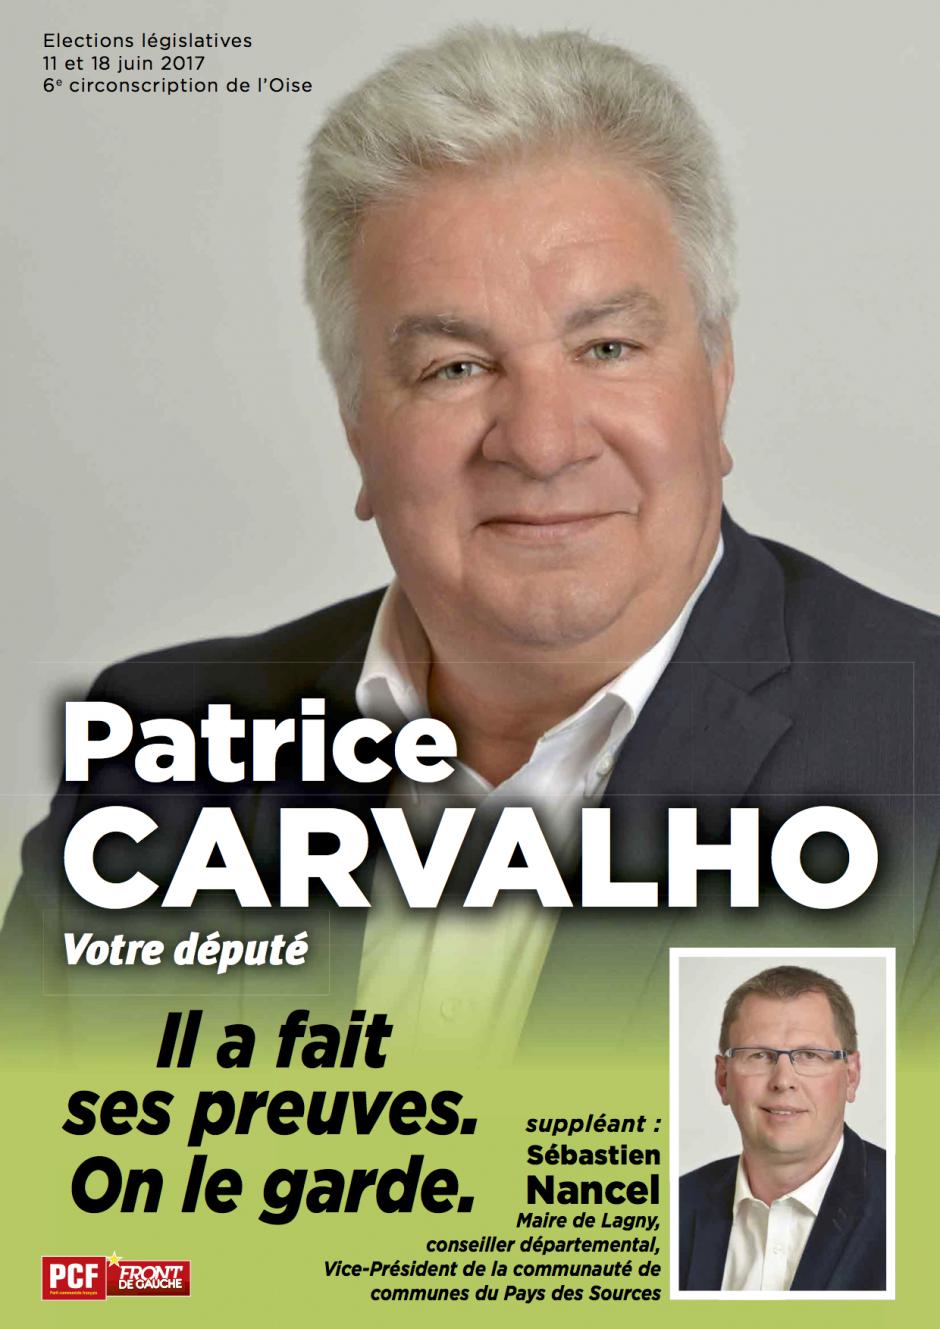 Profession de foi de Patrice Carvalho et Sébastien Nancel - 6e circonscription de l'Oise, 11 juin 2017